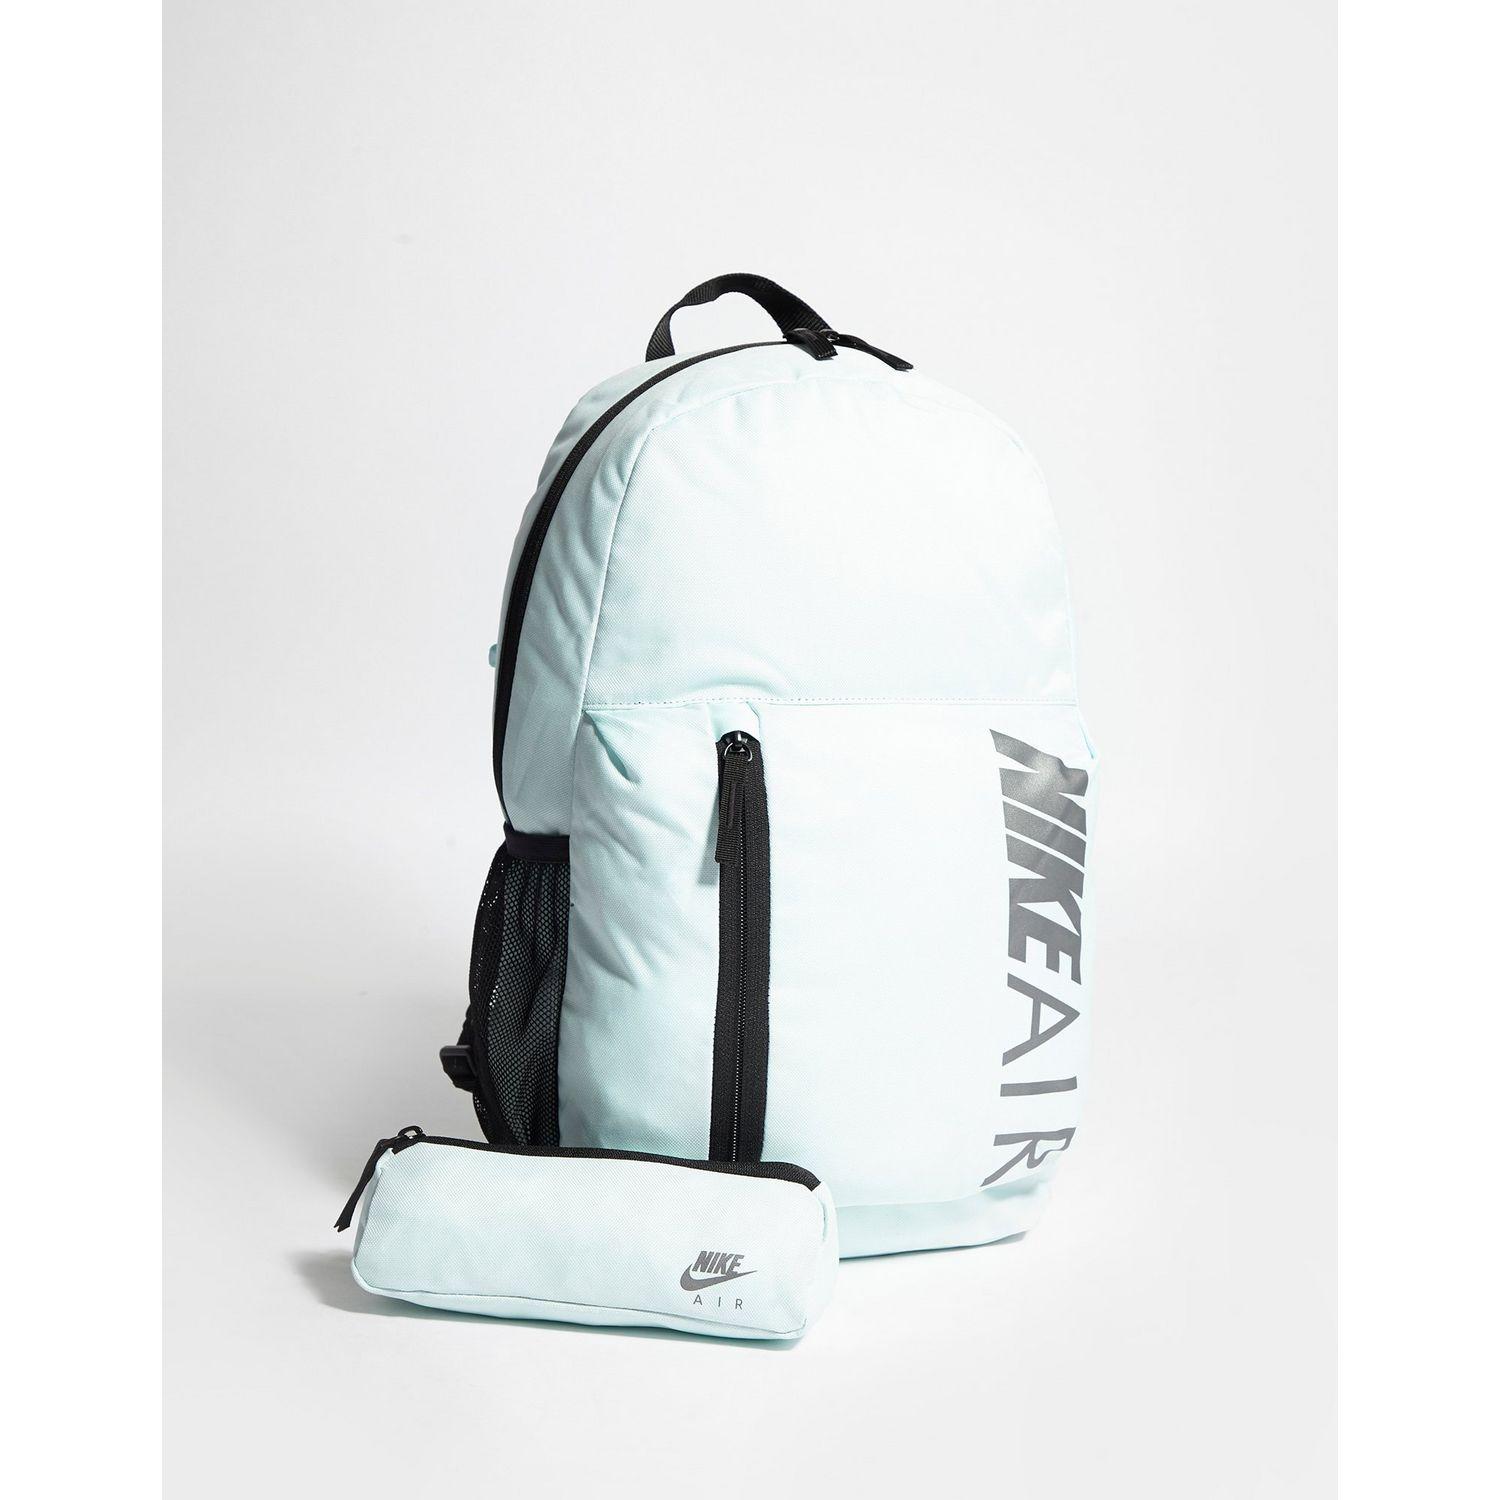 nike elemental air backpack